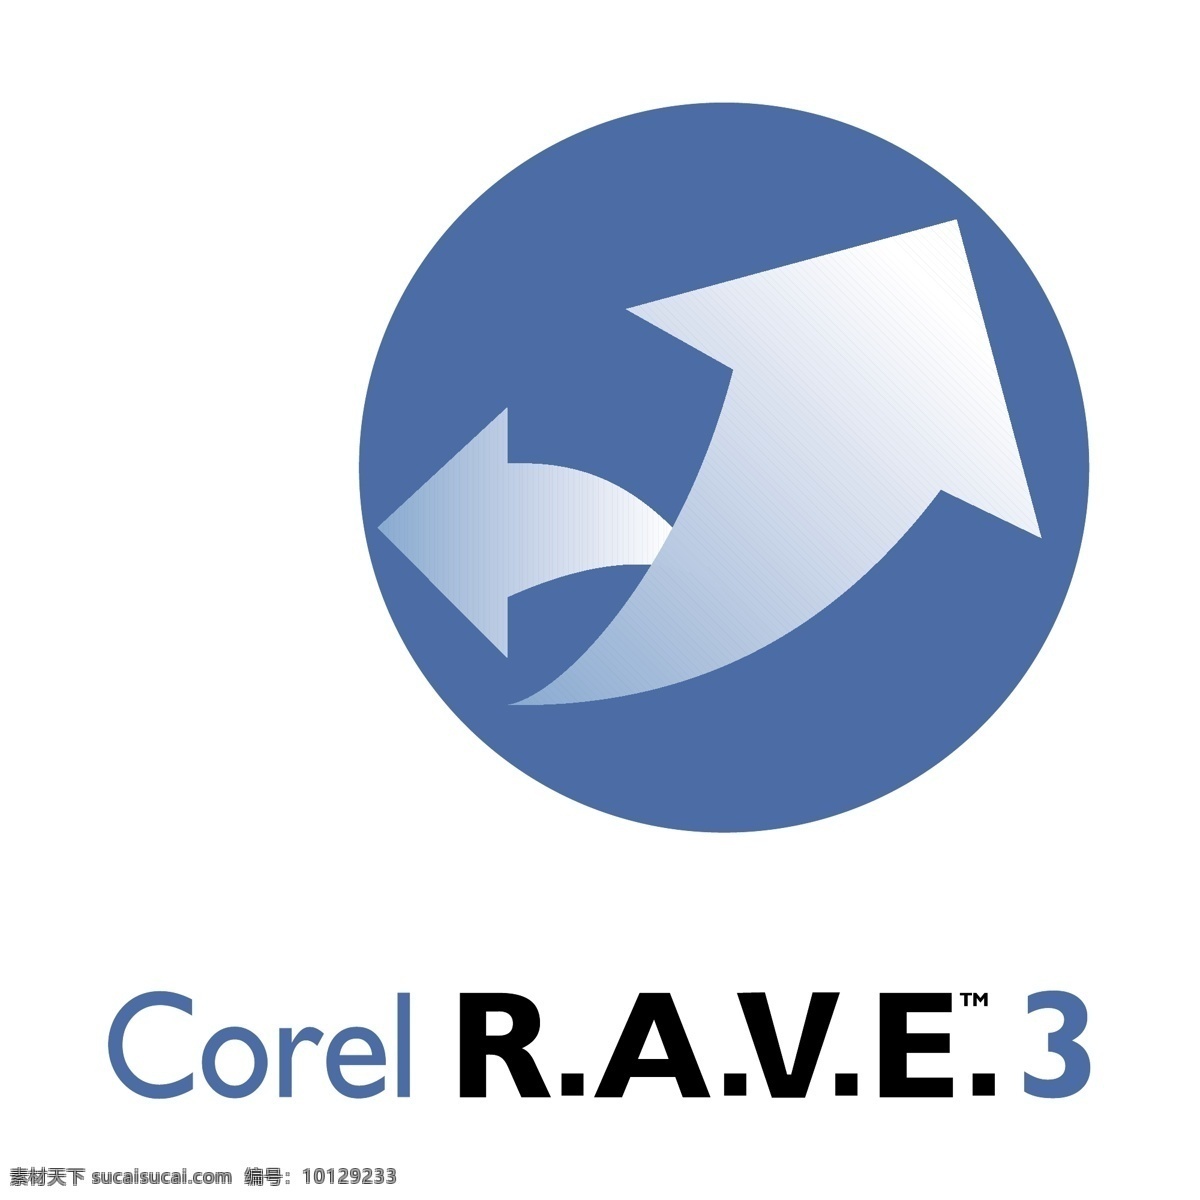 corel rave 狂欢 矢量 自由 向量 免费 载体 白色